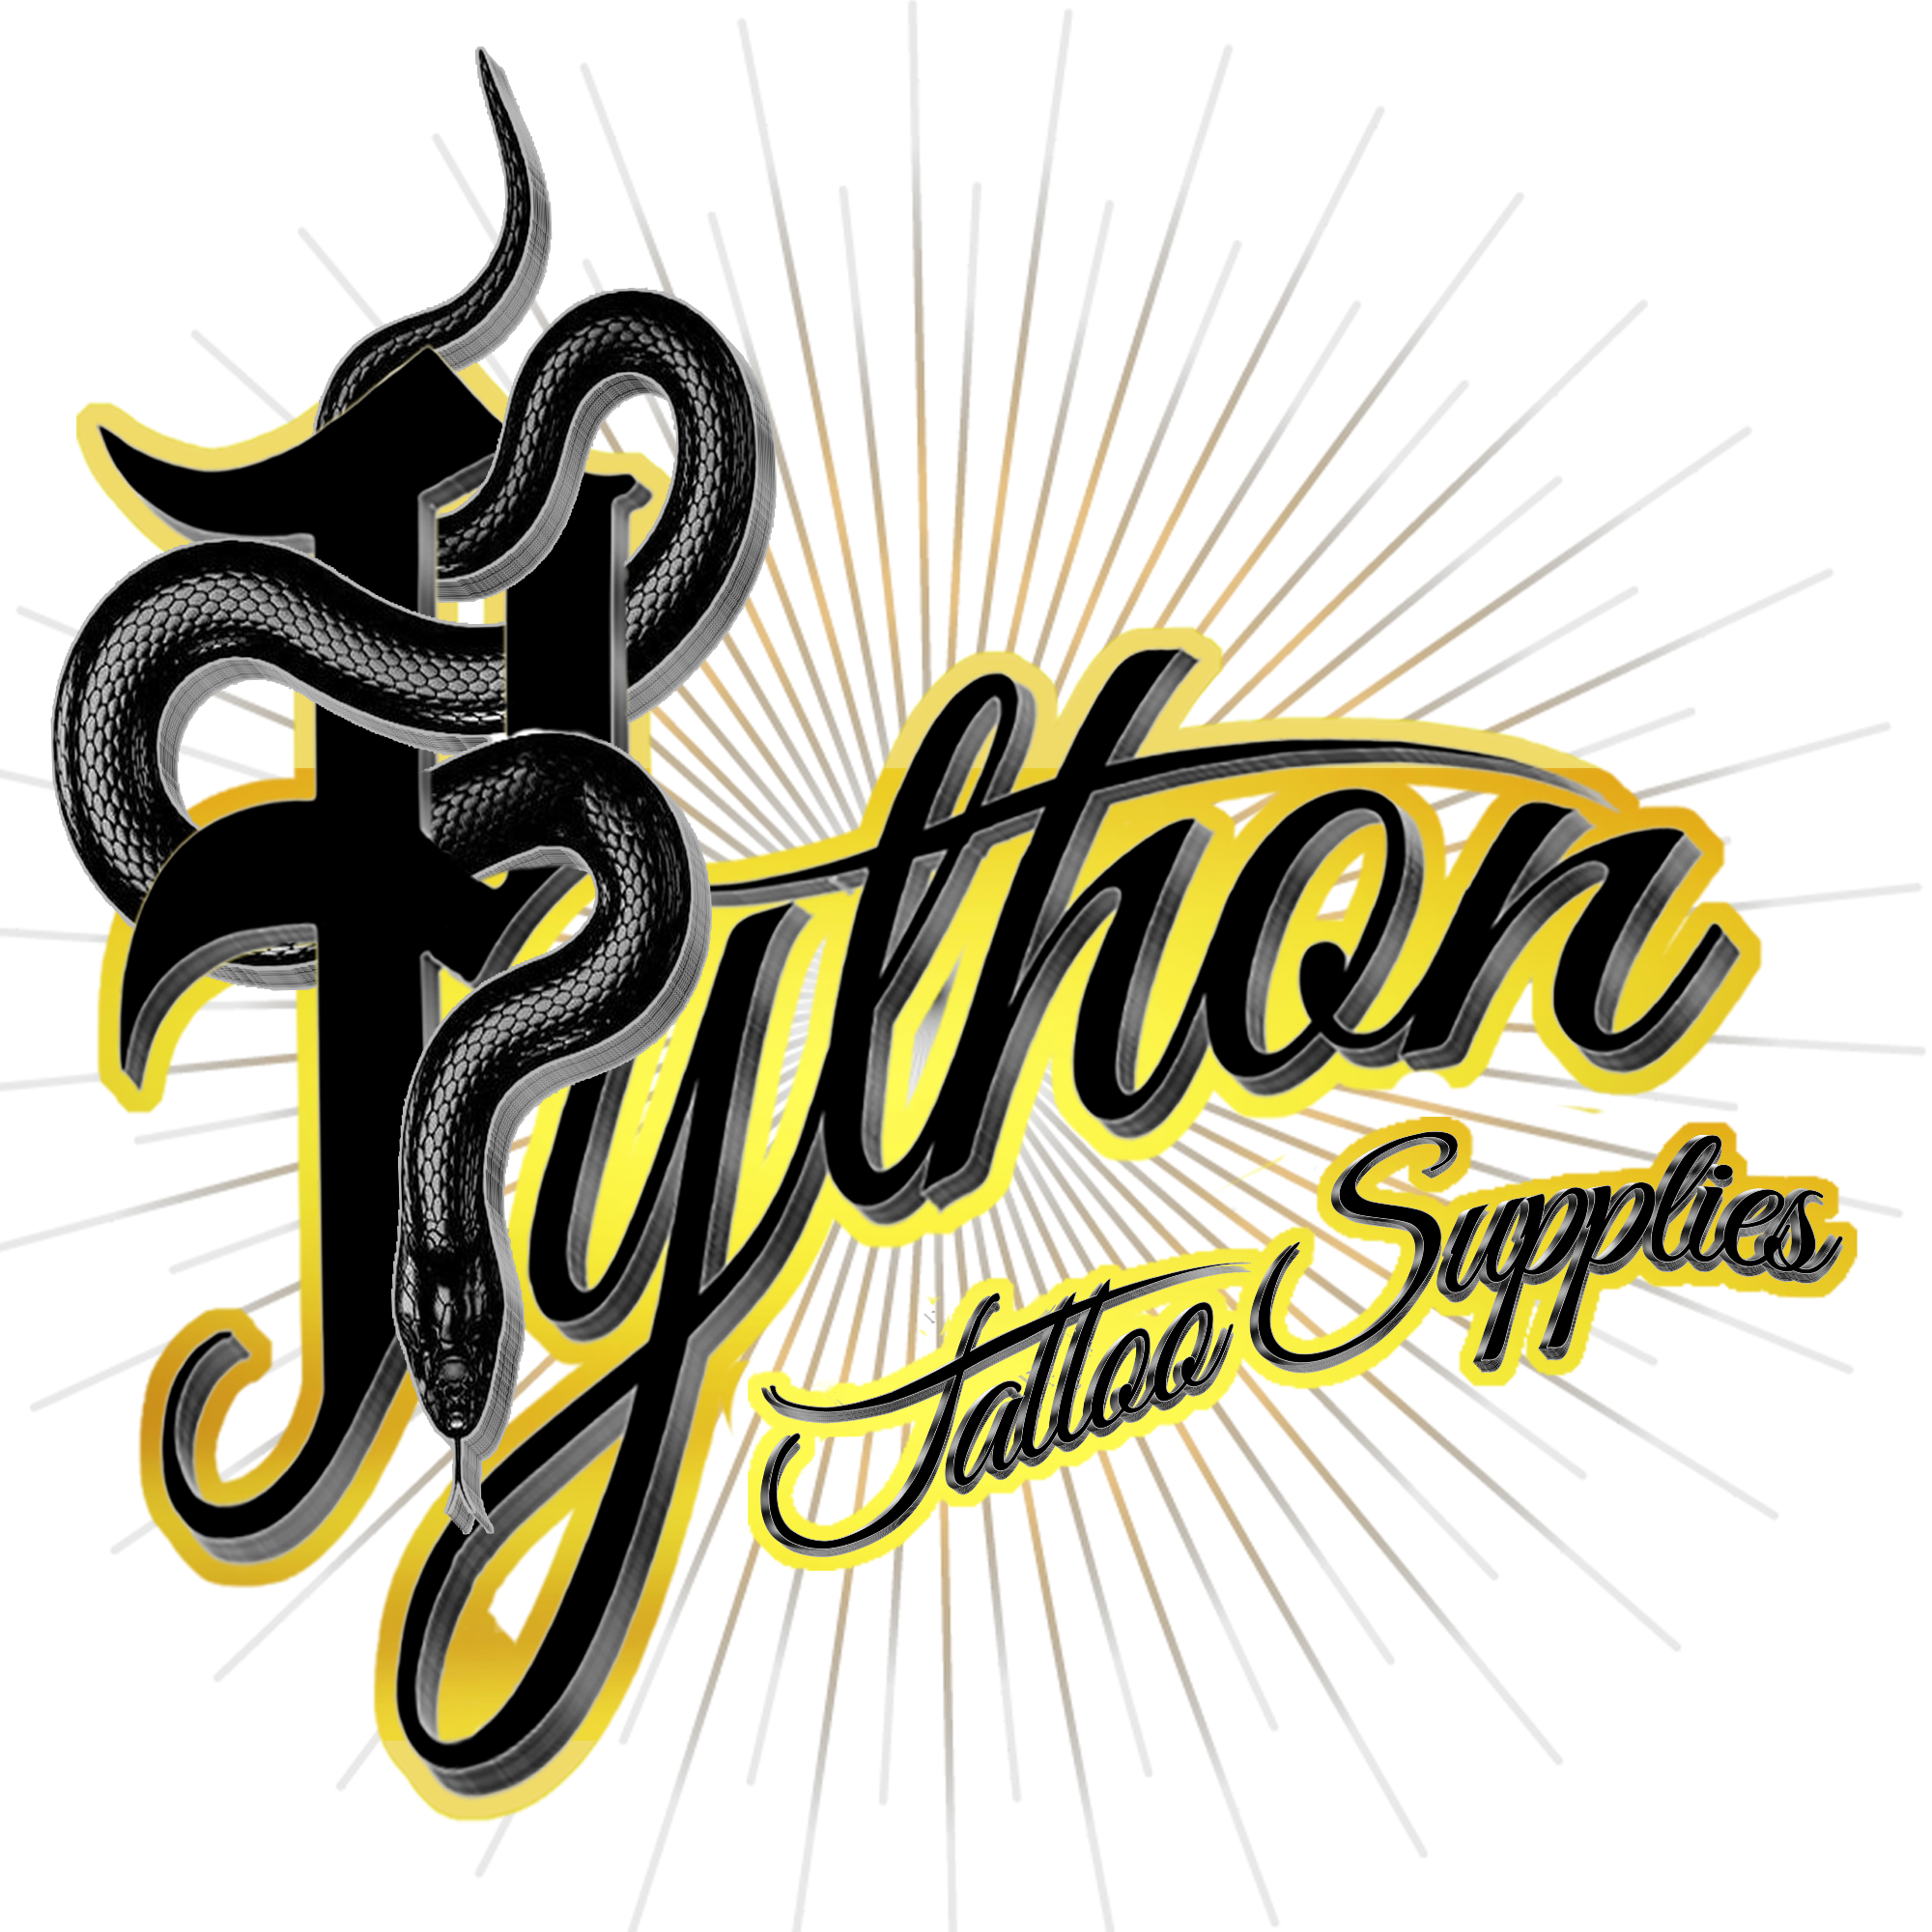 Python Tattoo Supplier